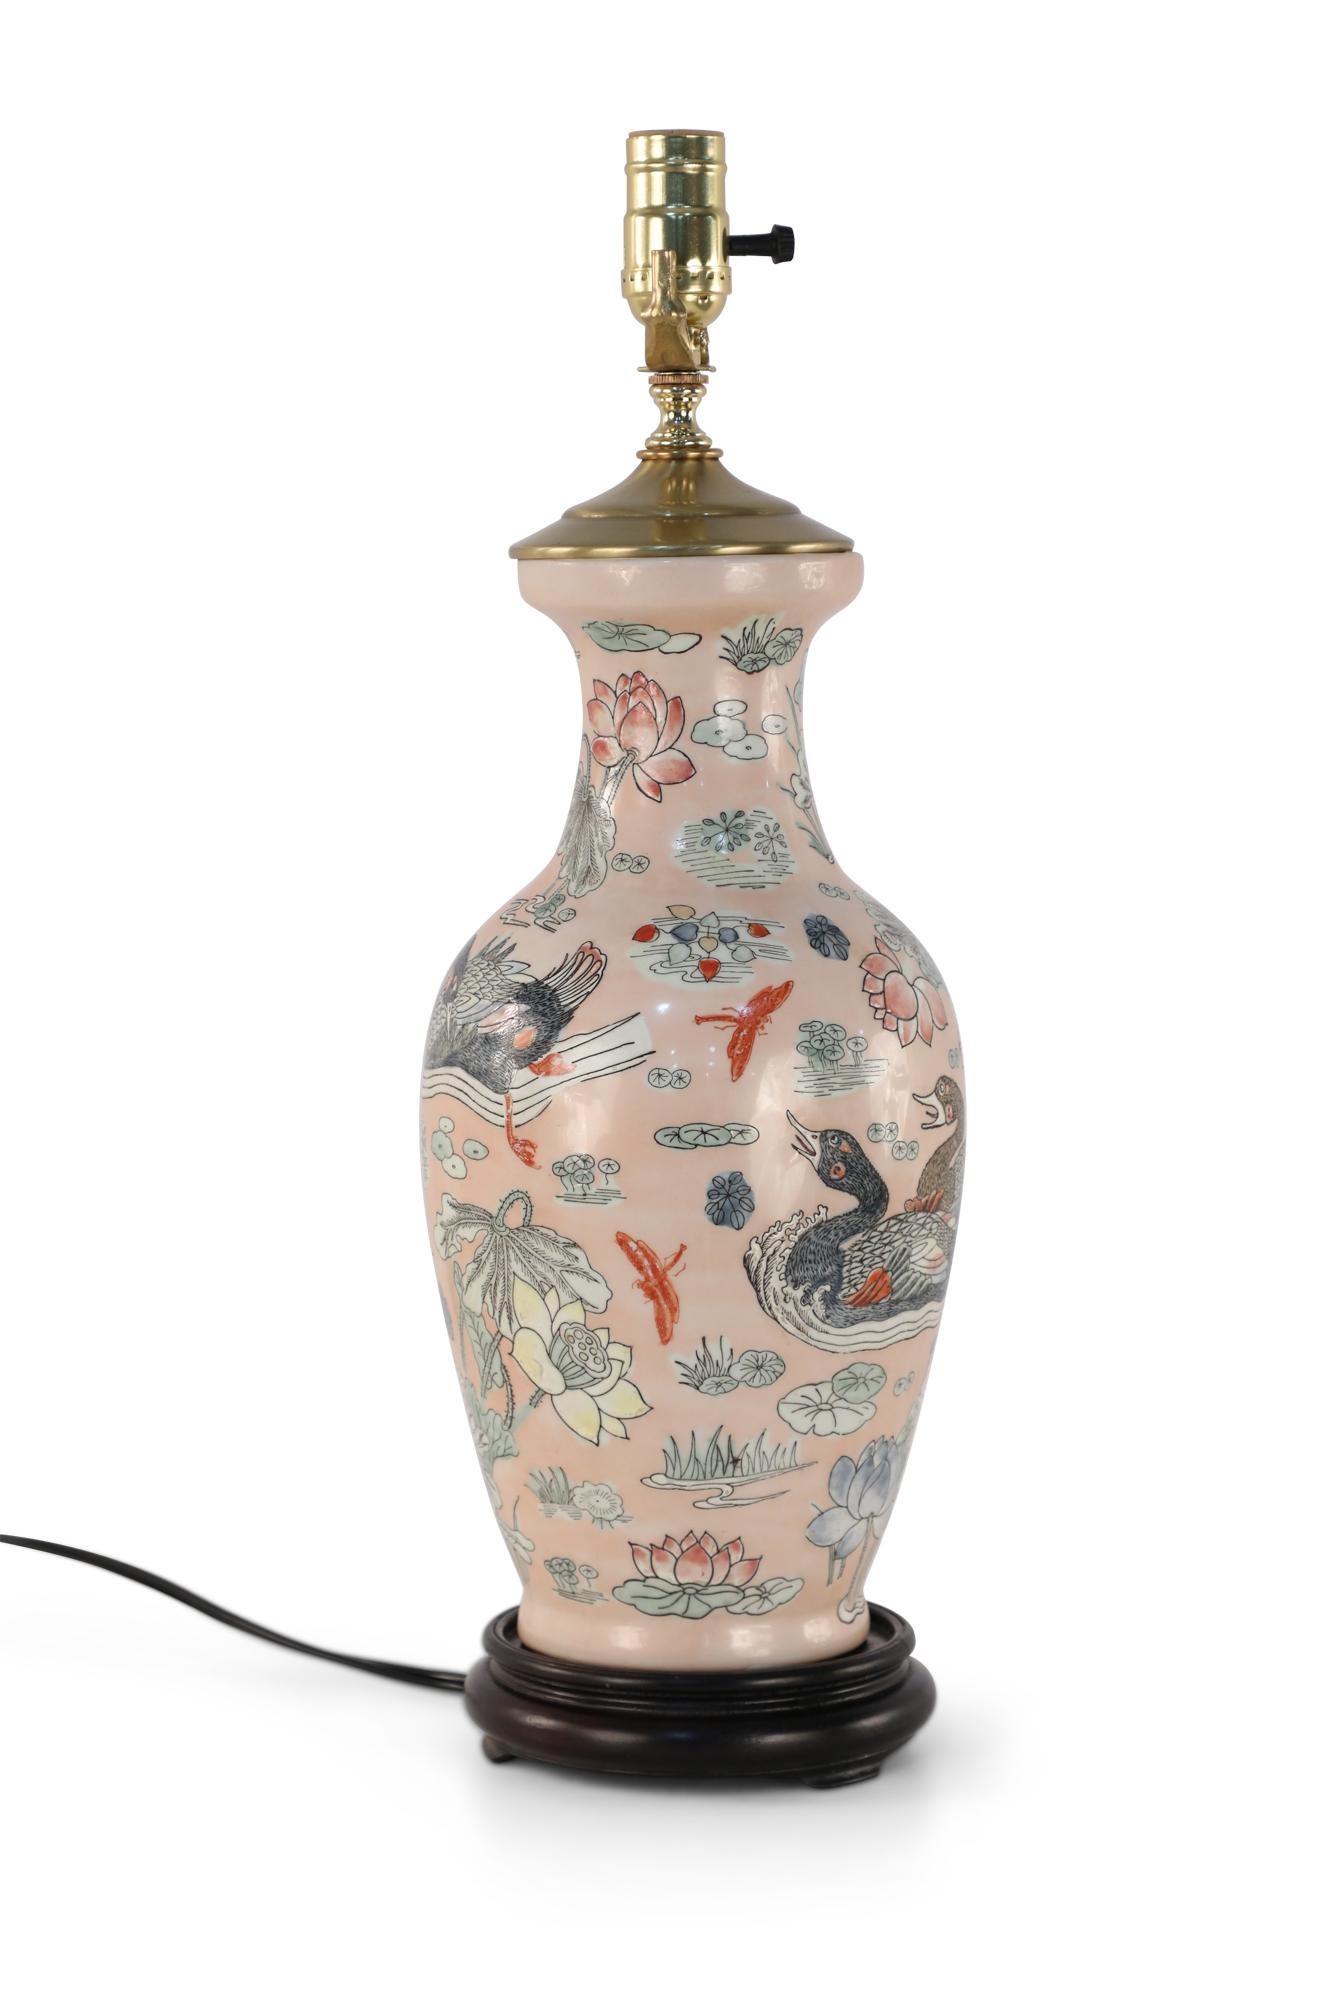 Chinesische Tischlampe aus rosafarbener Keramik, die aus einer balusterförmigen Vase besteht, die mit Enten in natürlicher Umgebung verziert ist, die durch Linien und orangefarbene Libellen hervorgehoben werden, auf einem Holzsockel mit